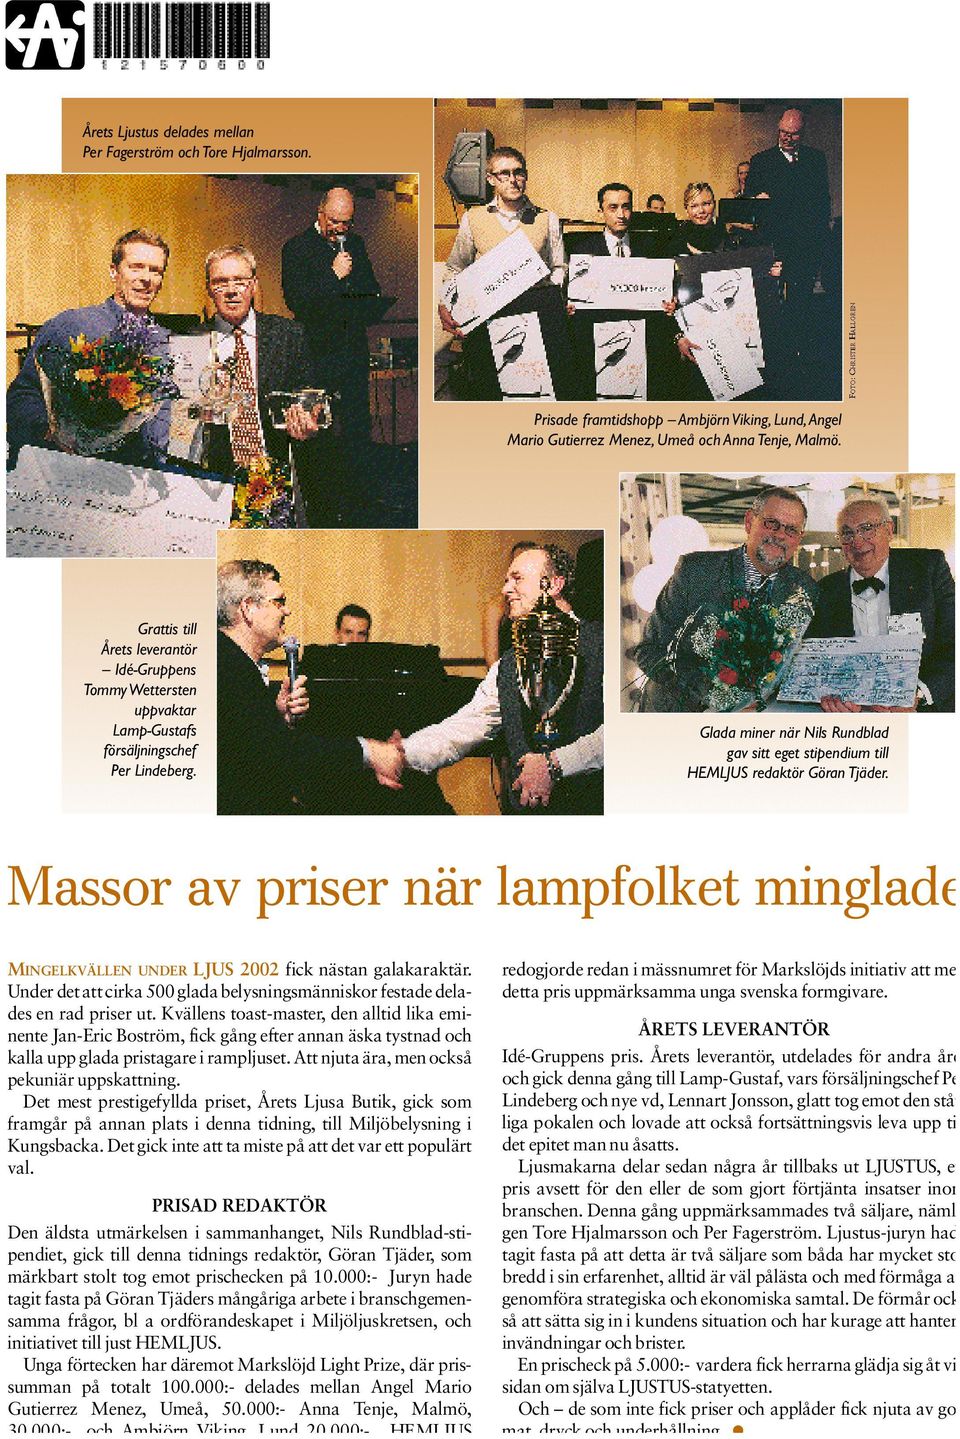 Glada miner när Nils Rundblad gav sitt eget stipendium till HEMLJUS redaktör Göran Tjäder.